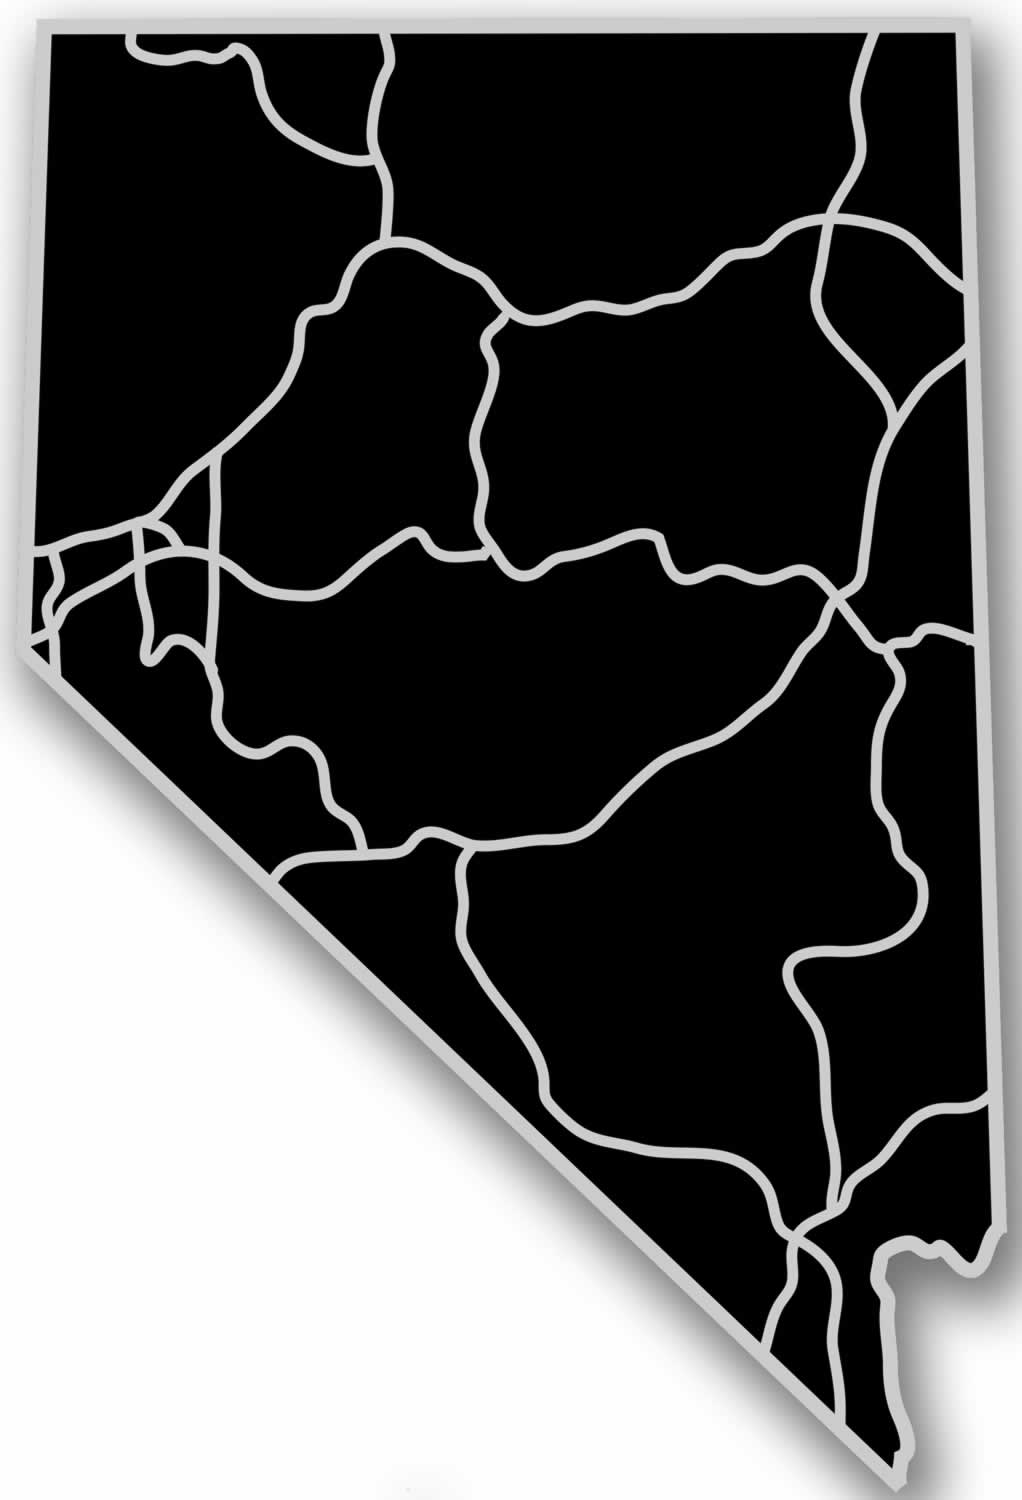 Nevada - Acrylic Cutout State Map - Black/Grey USA States Acrylic Art